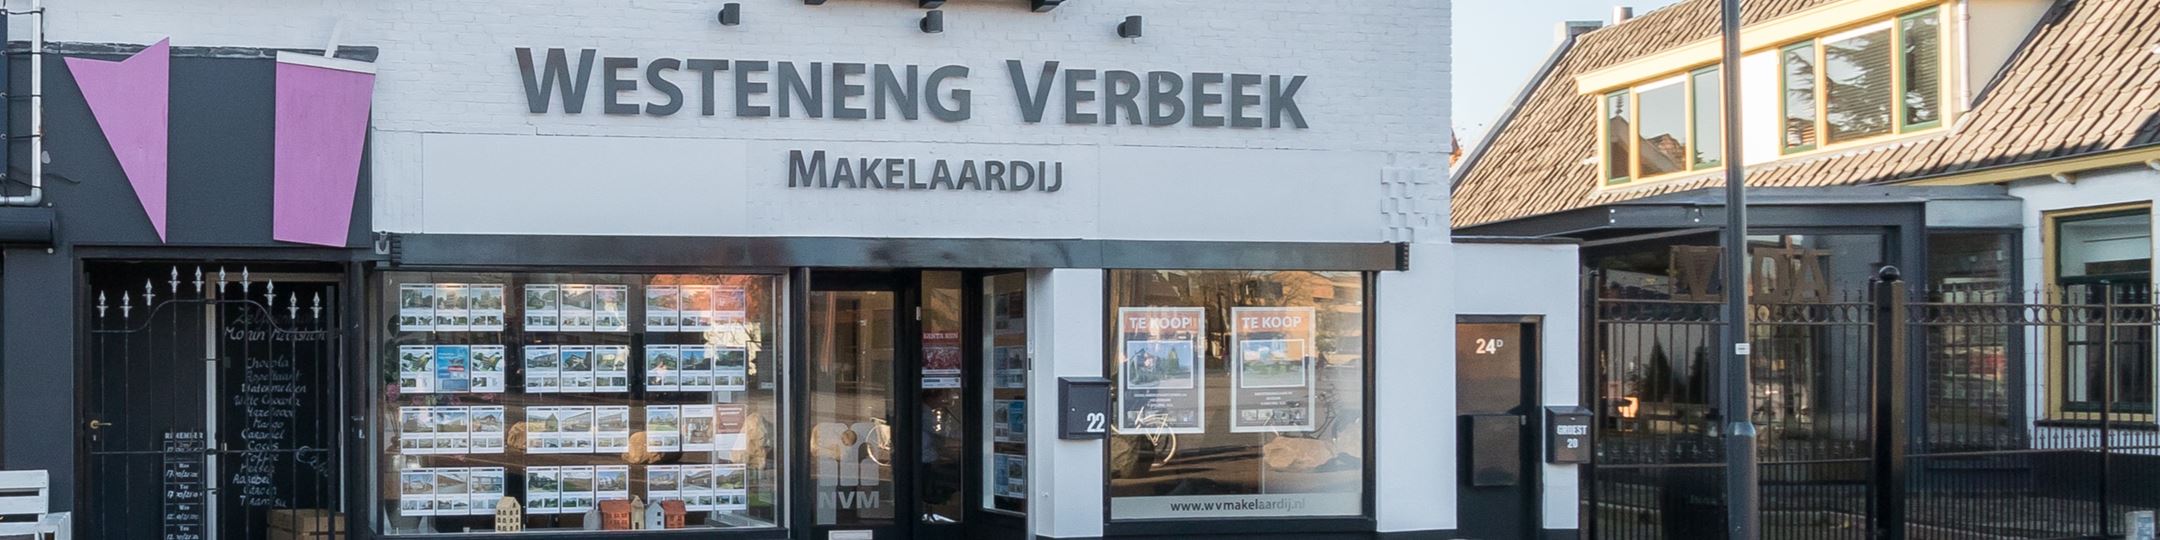 Banner Westeneng Verbeek Makelaardij Hilversum